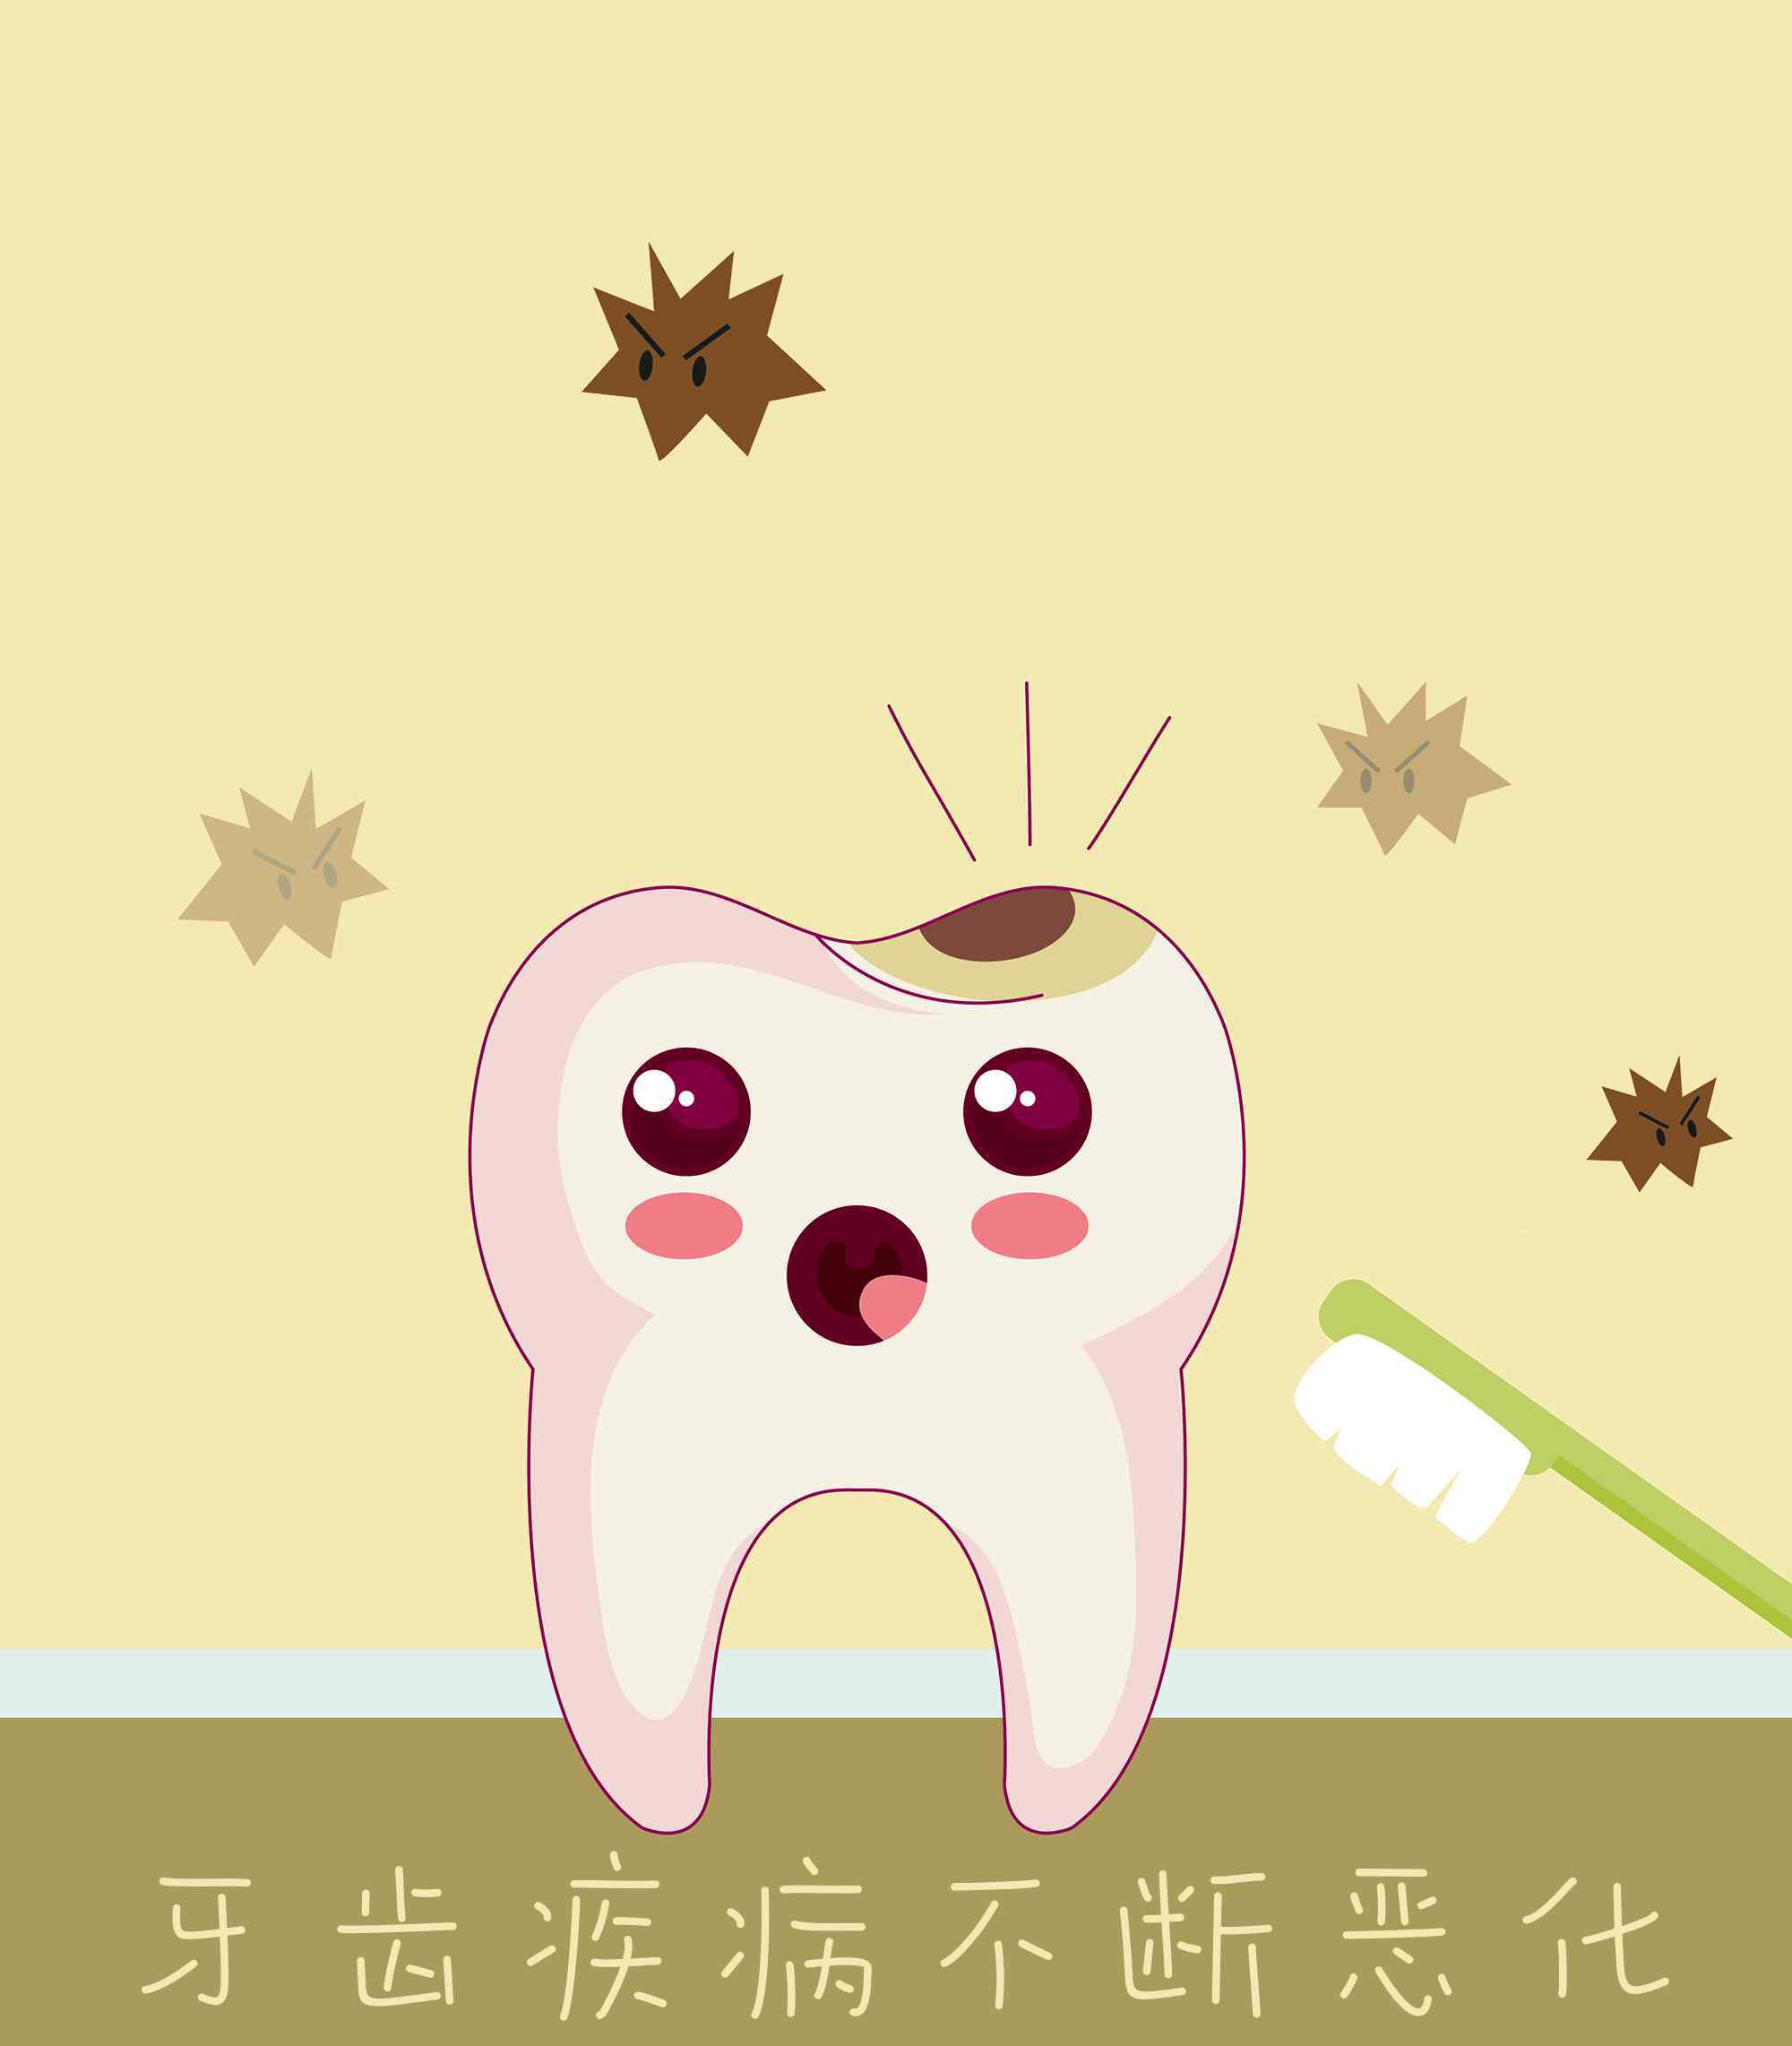 牙齿菌斑图片 【腐蚀人类牙齿】有些人生来都没见过的牙菌斑图片